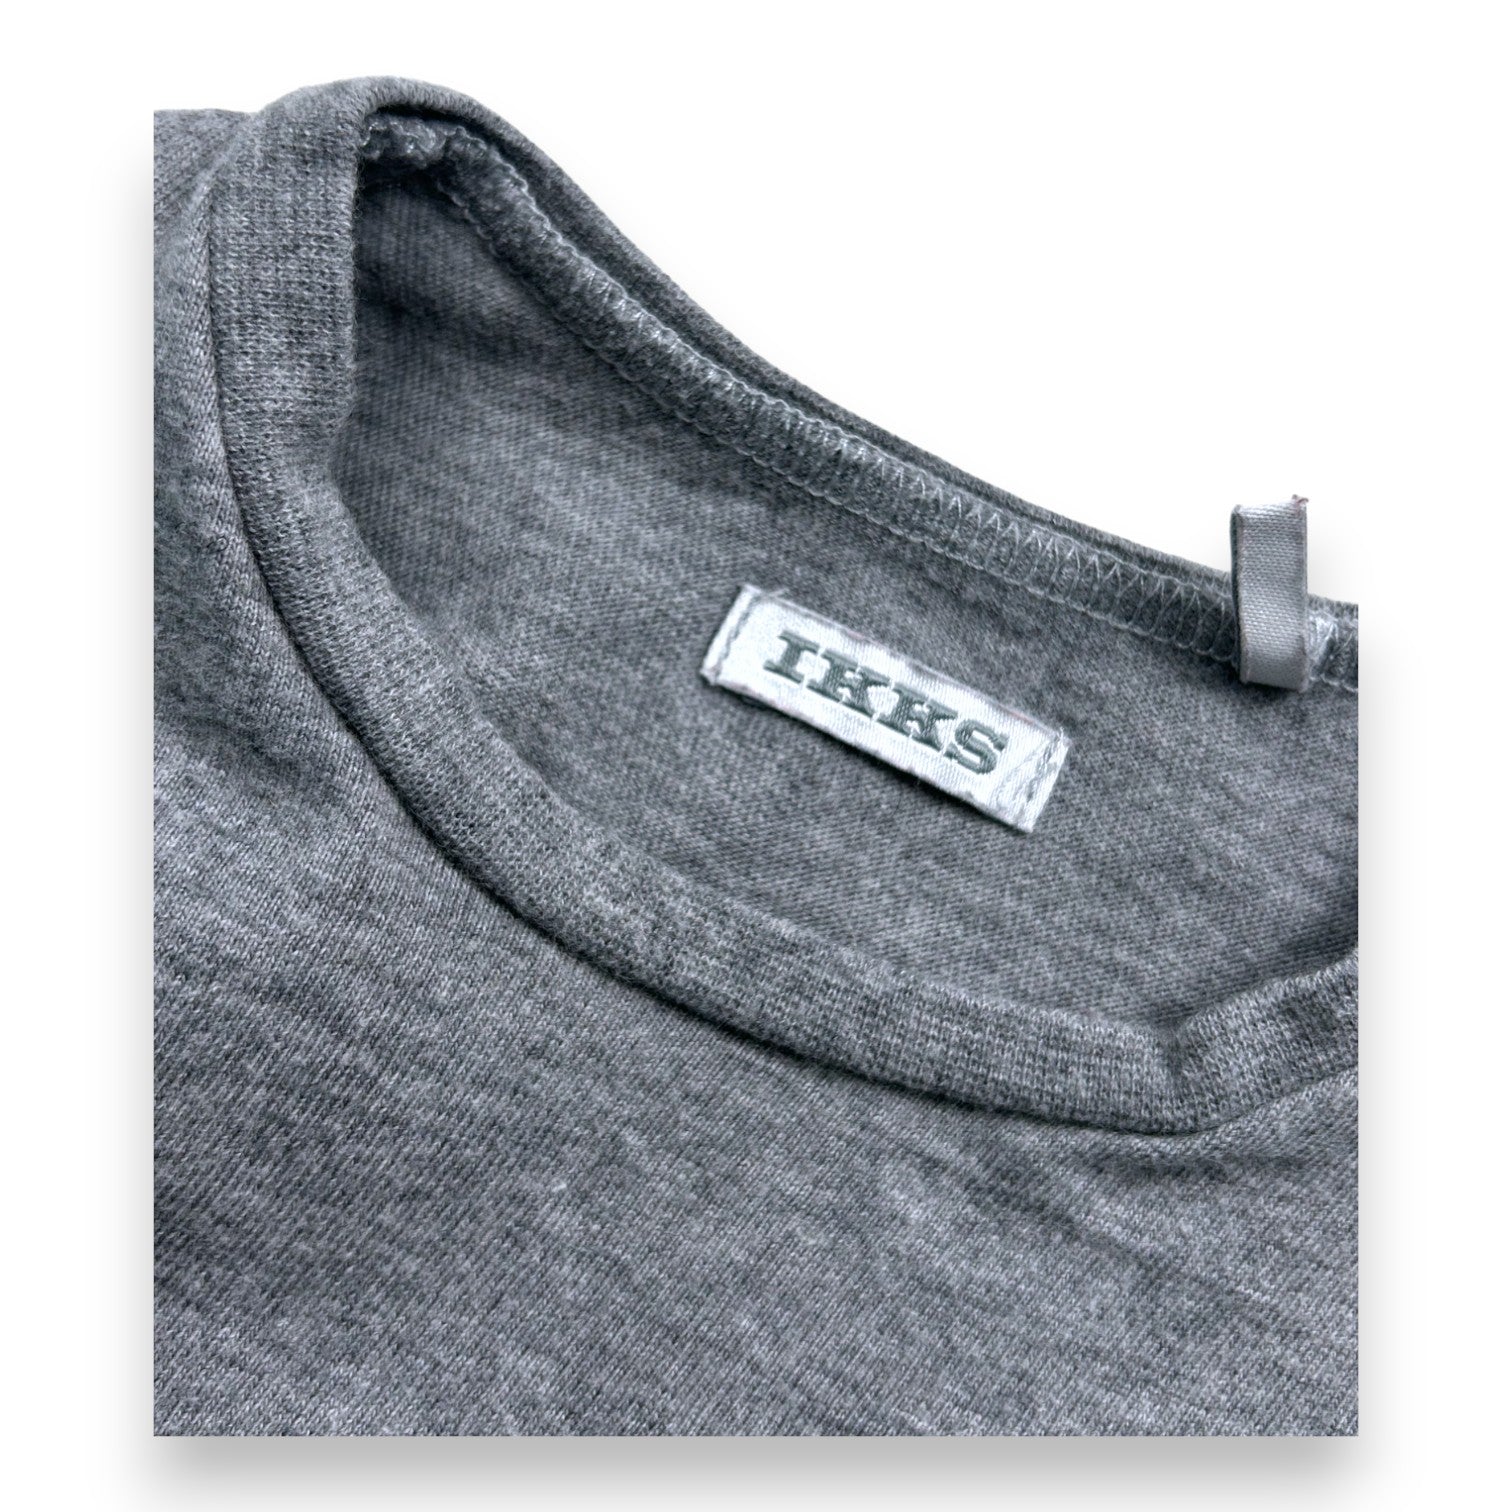 IKKS - T-shirt manches longues gris imprimé alpaga - 2 ans